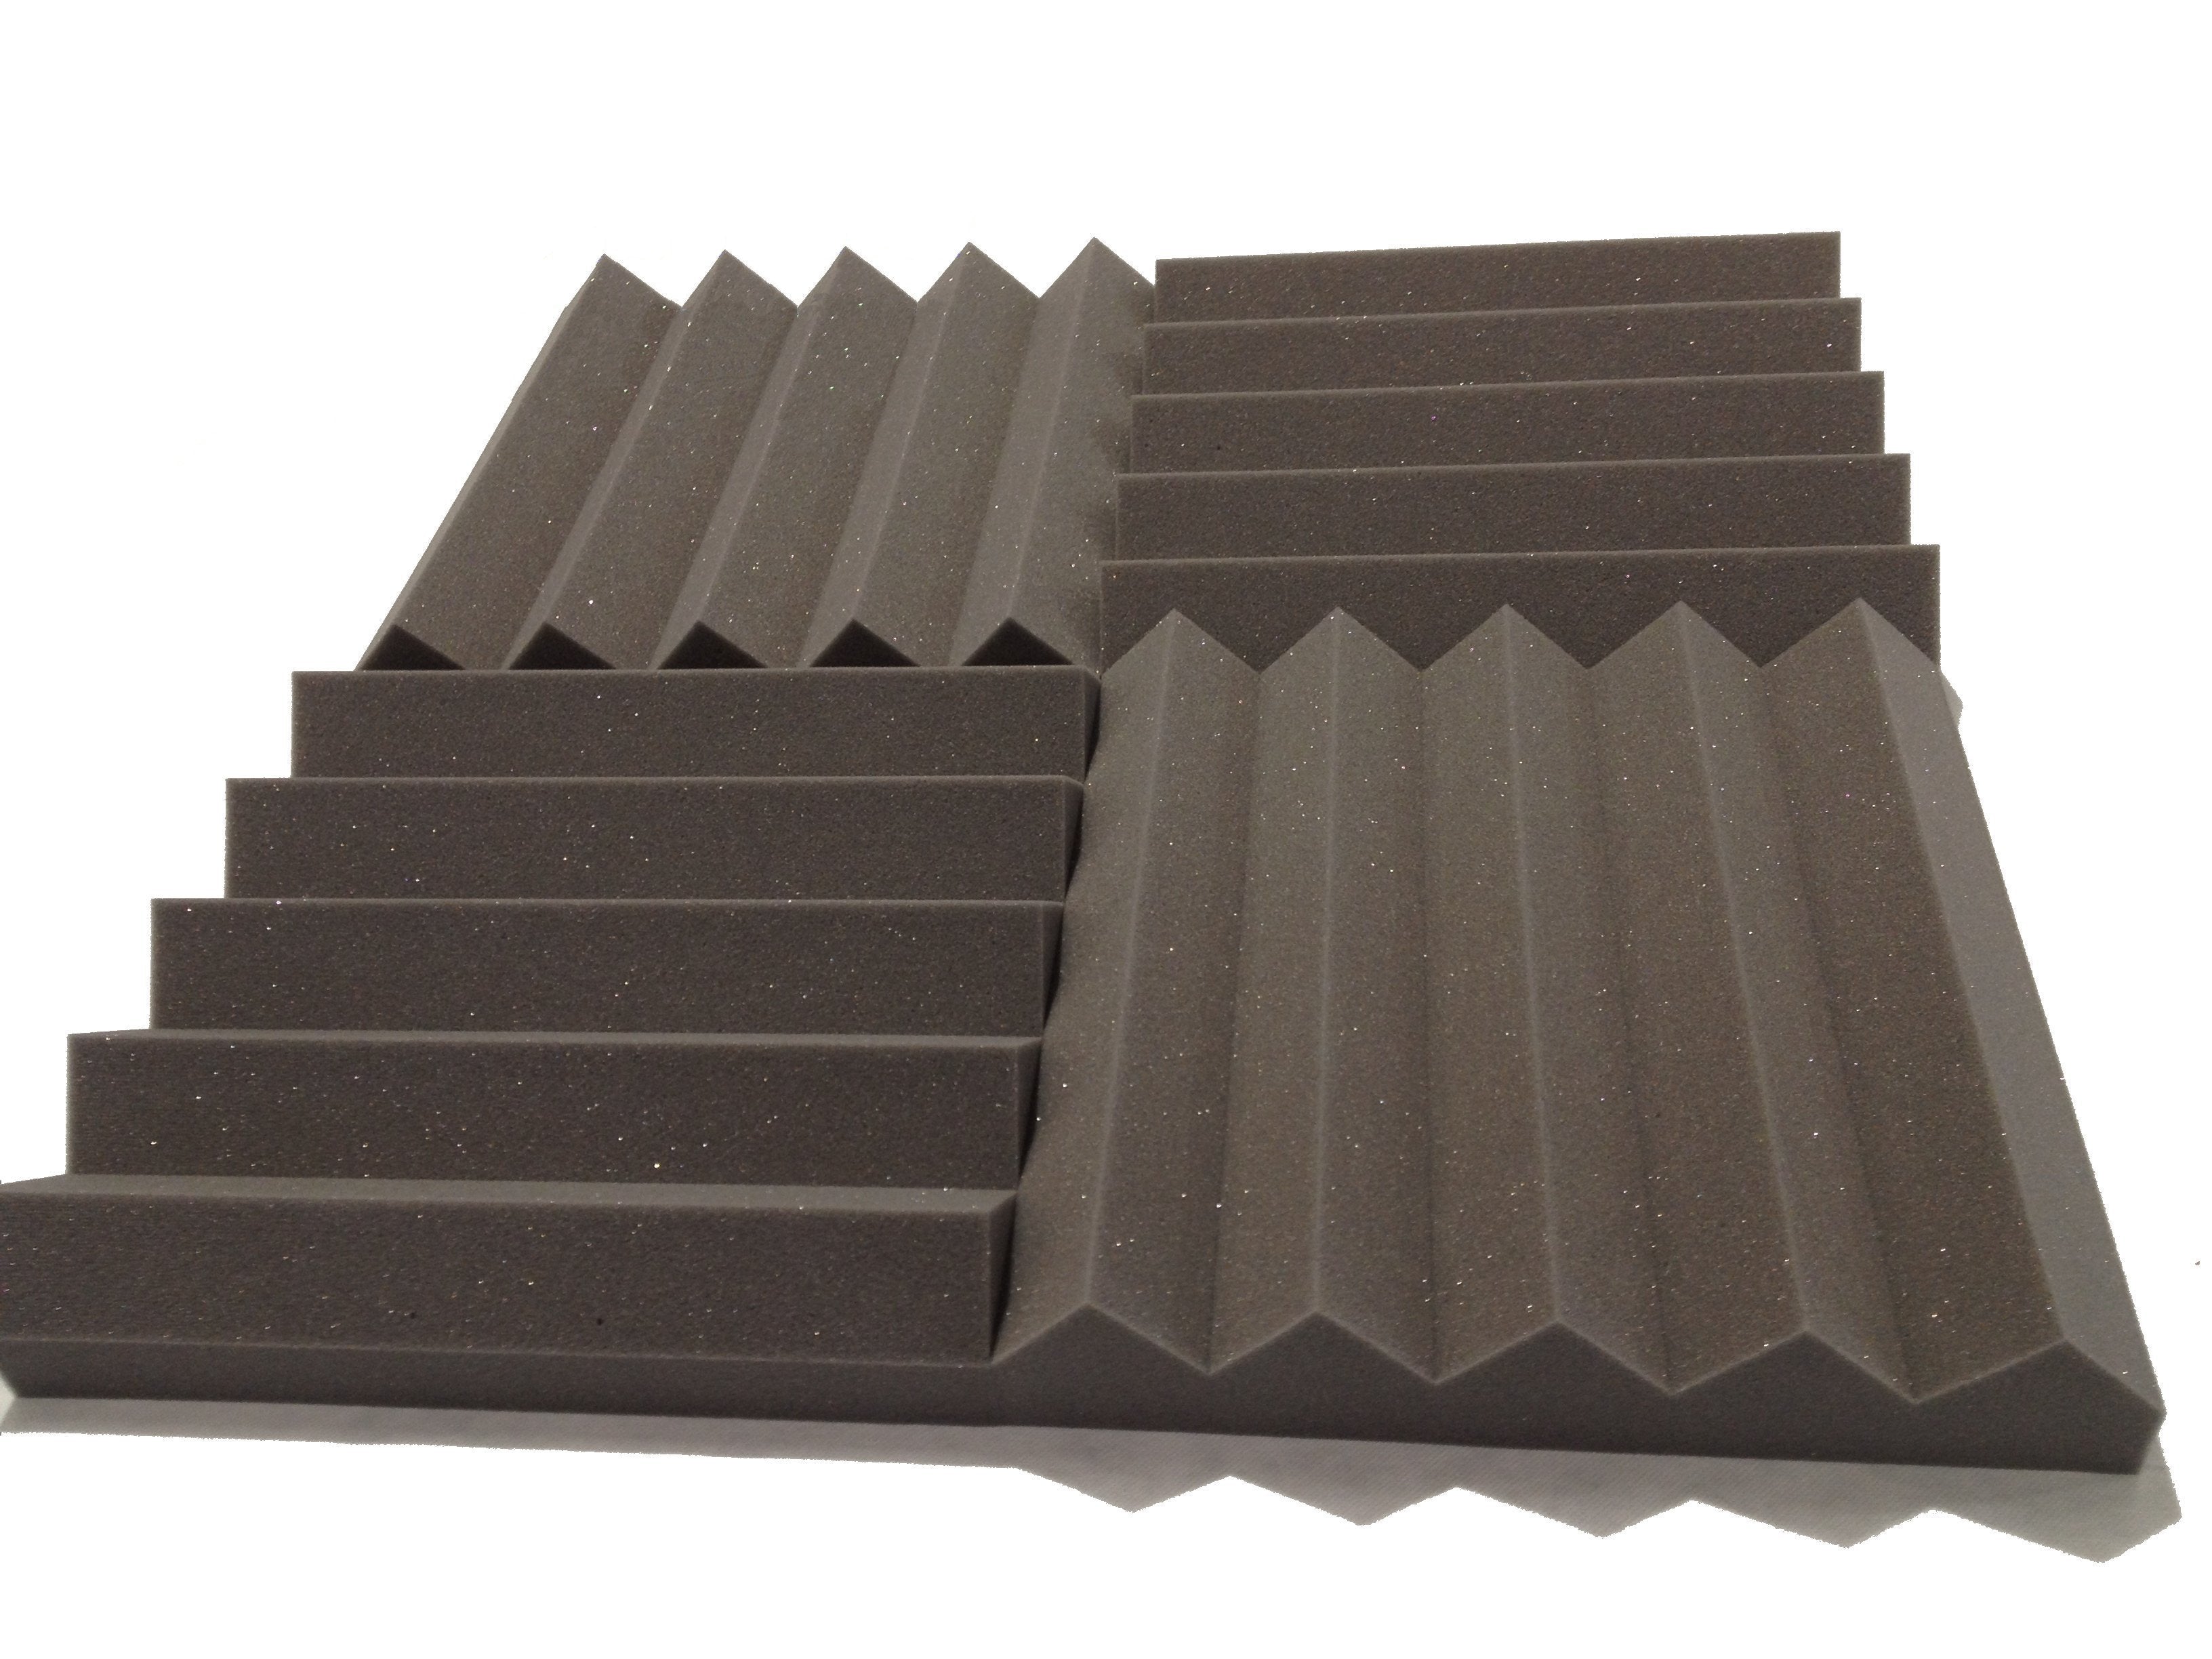 Wedge PRO 15" Acoustic Studio Foam Tile Pack - Advanced Acoustics